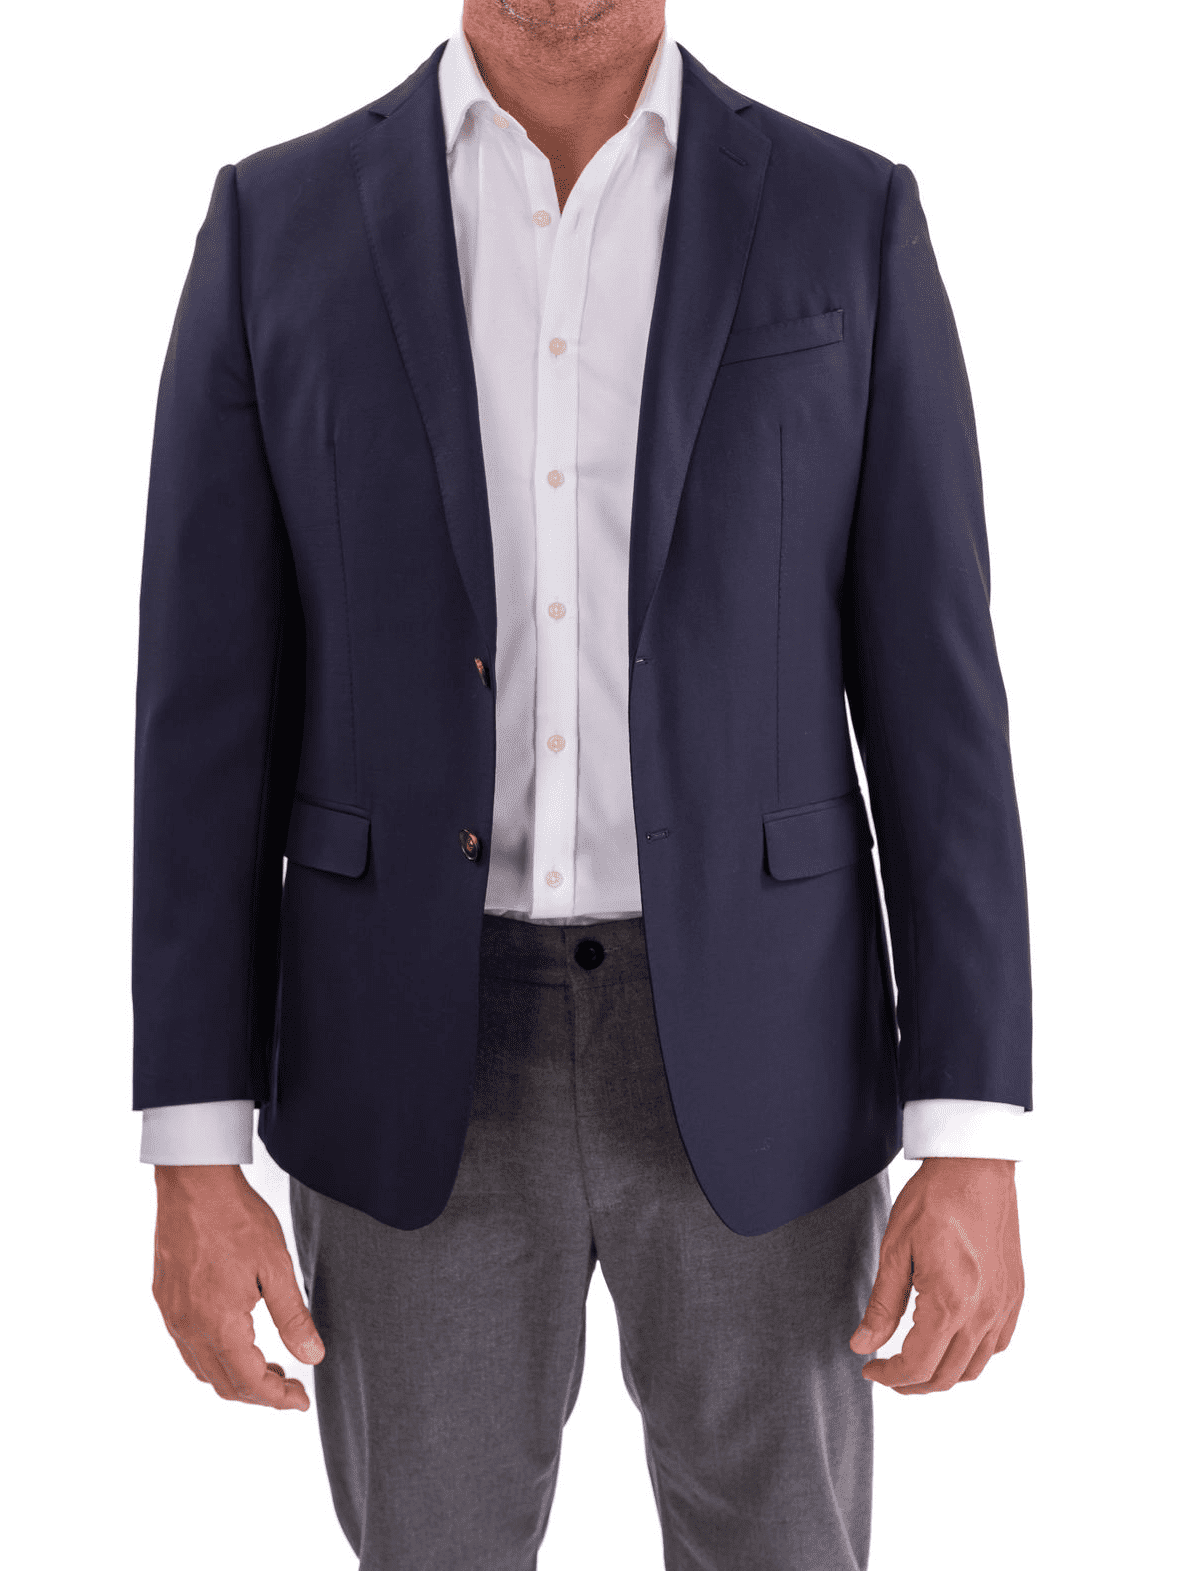 Shop Blujacket Blue 100% Wool Blazer | The Suit Depot